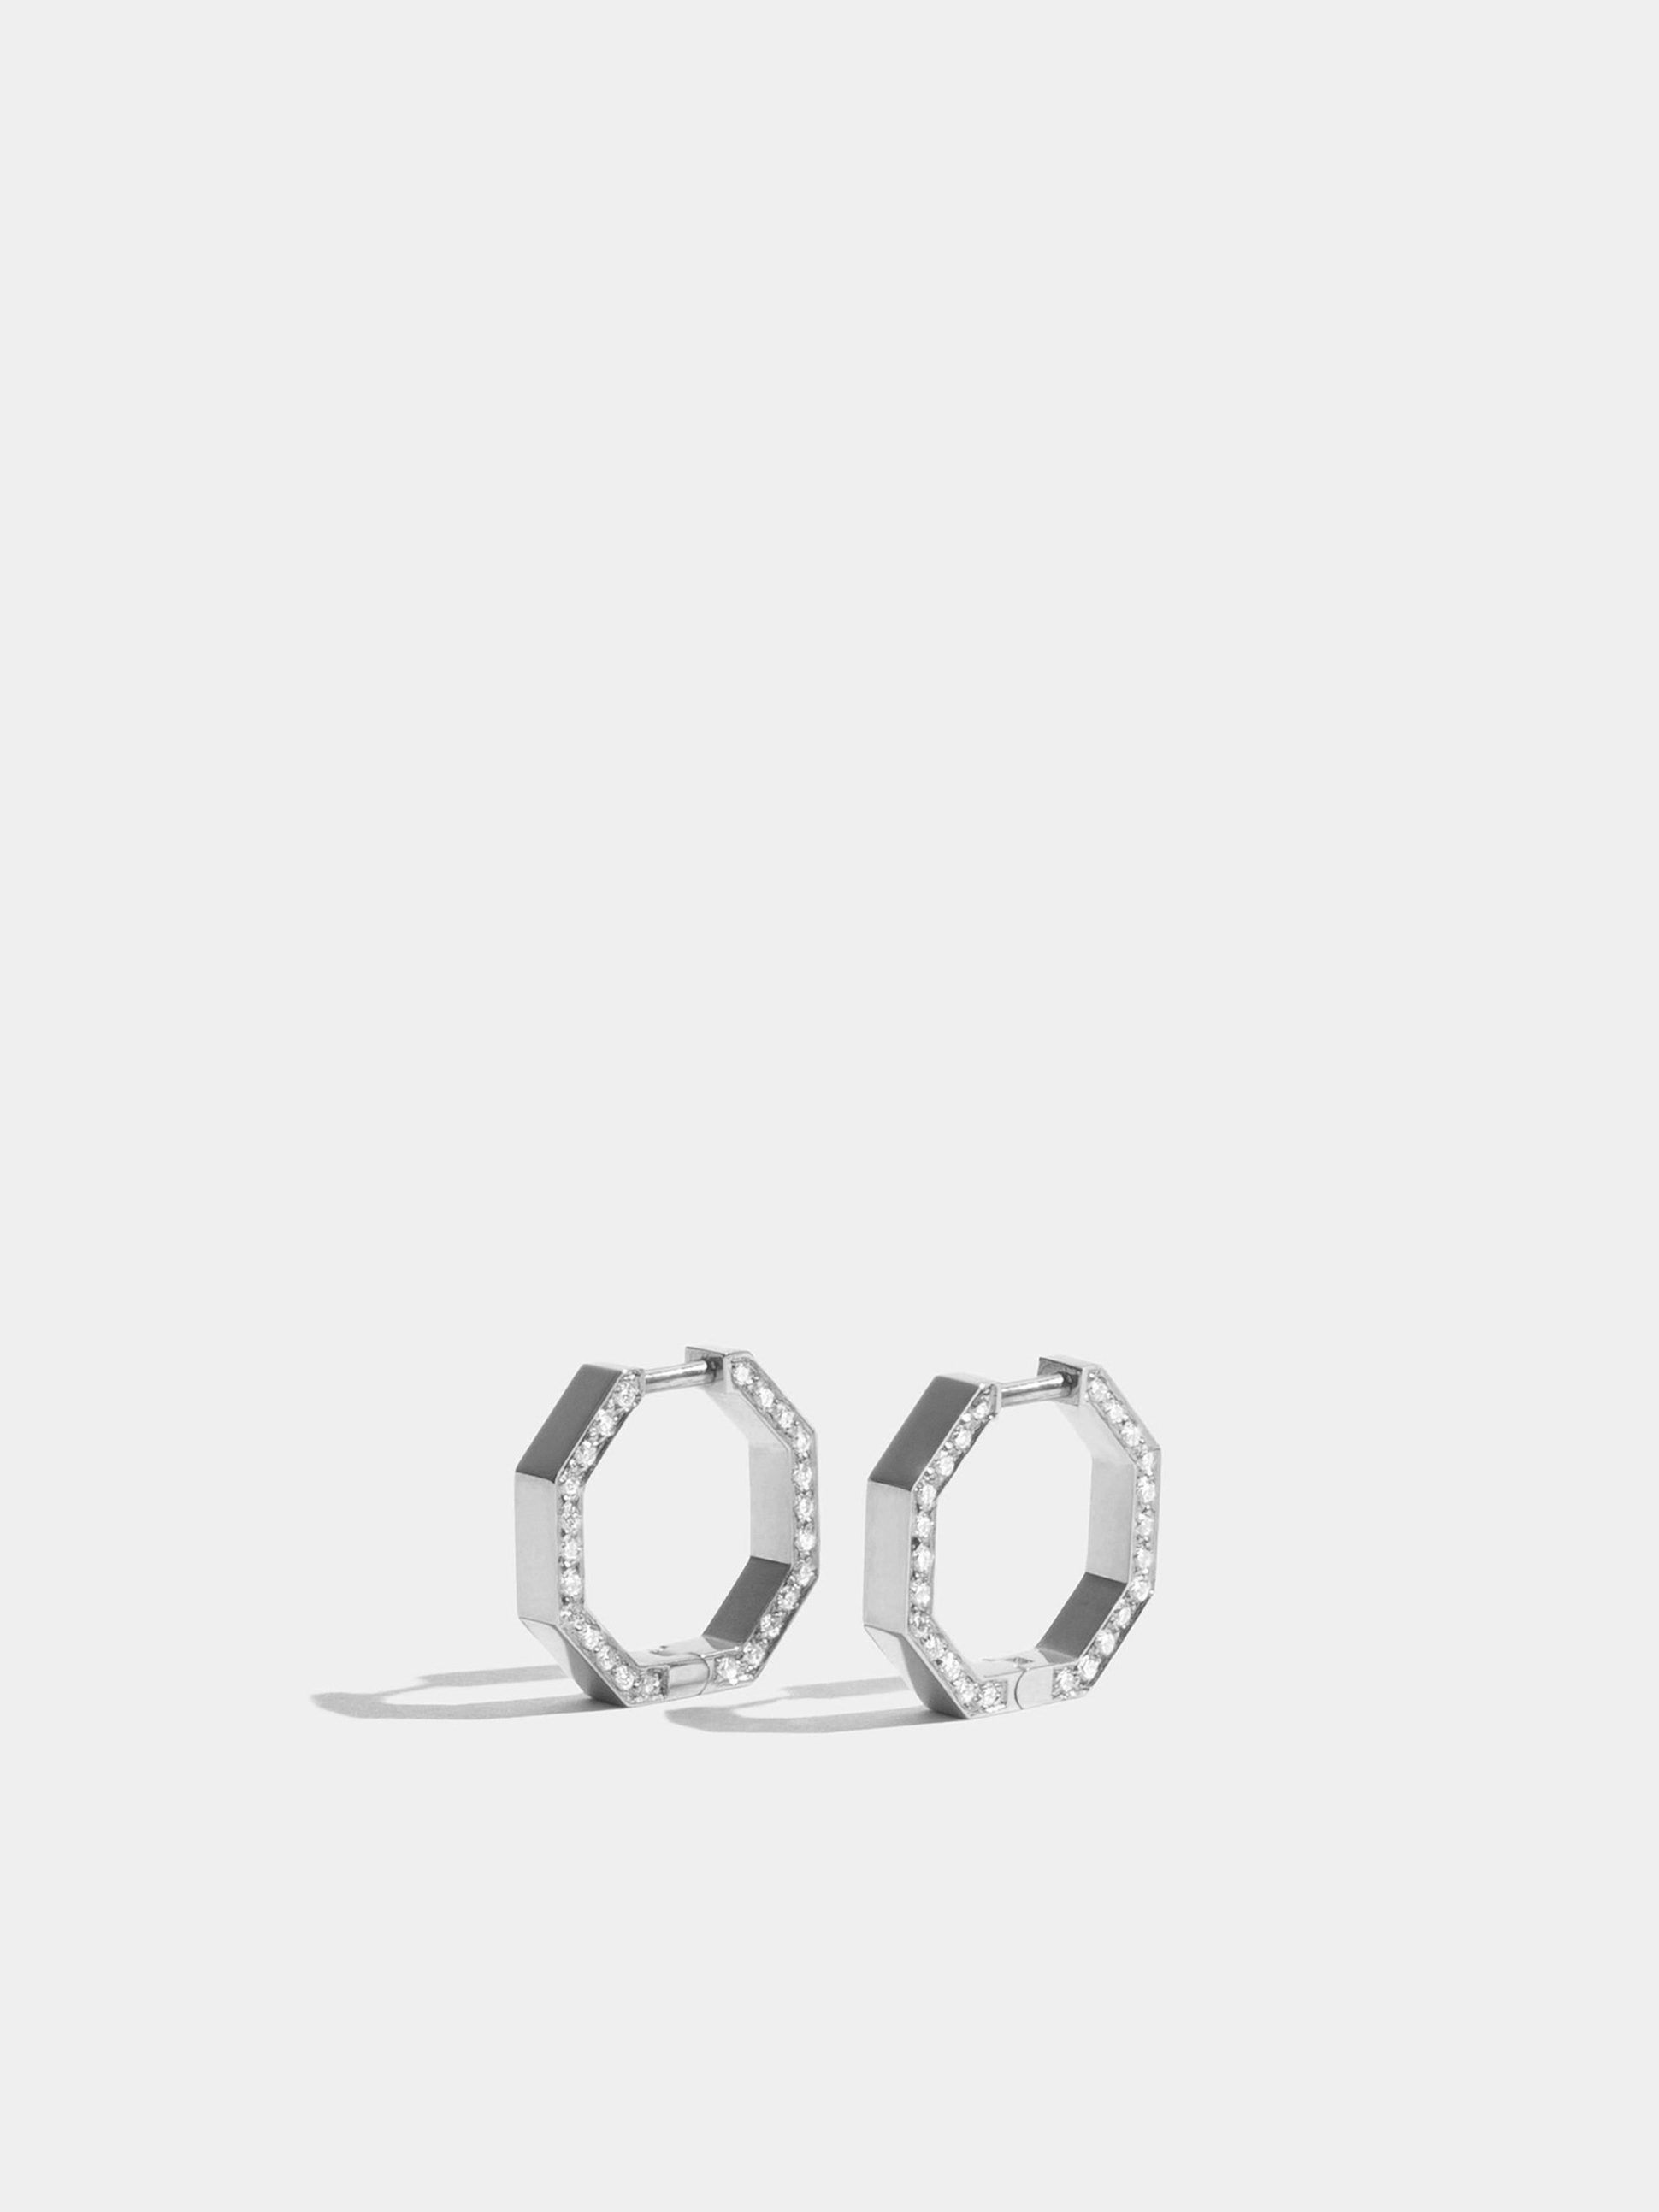 Boucles d'oreilles Octogone en Or blanc éthique 18 carats certifié Fairmined (13mm) et pavées de diamants de synthèse sur la tranche, la paire.